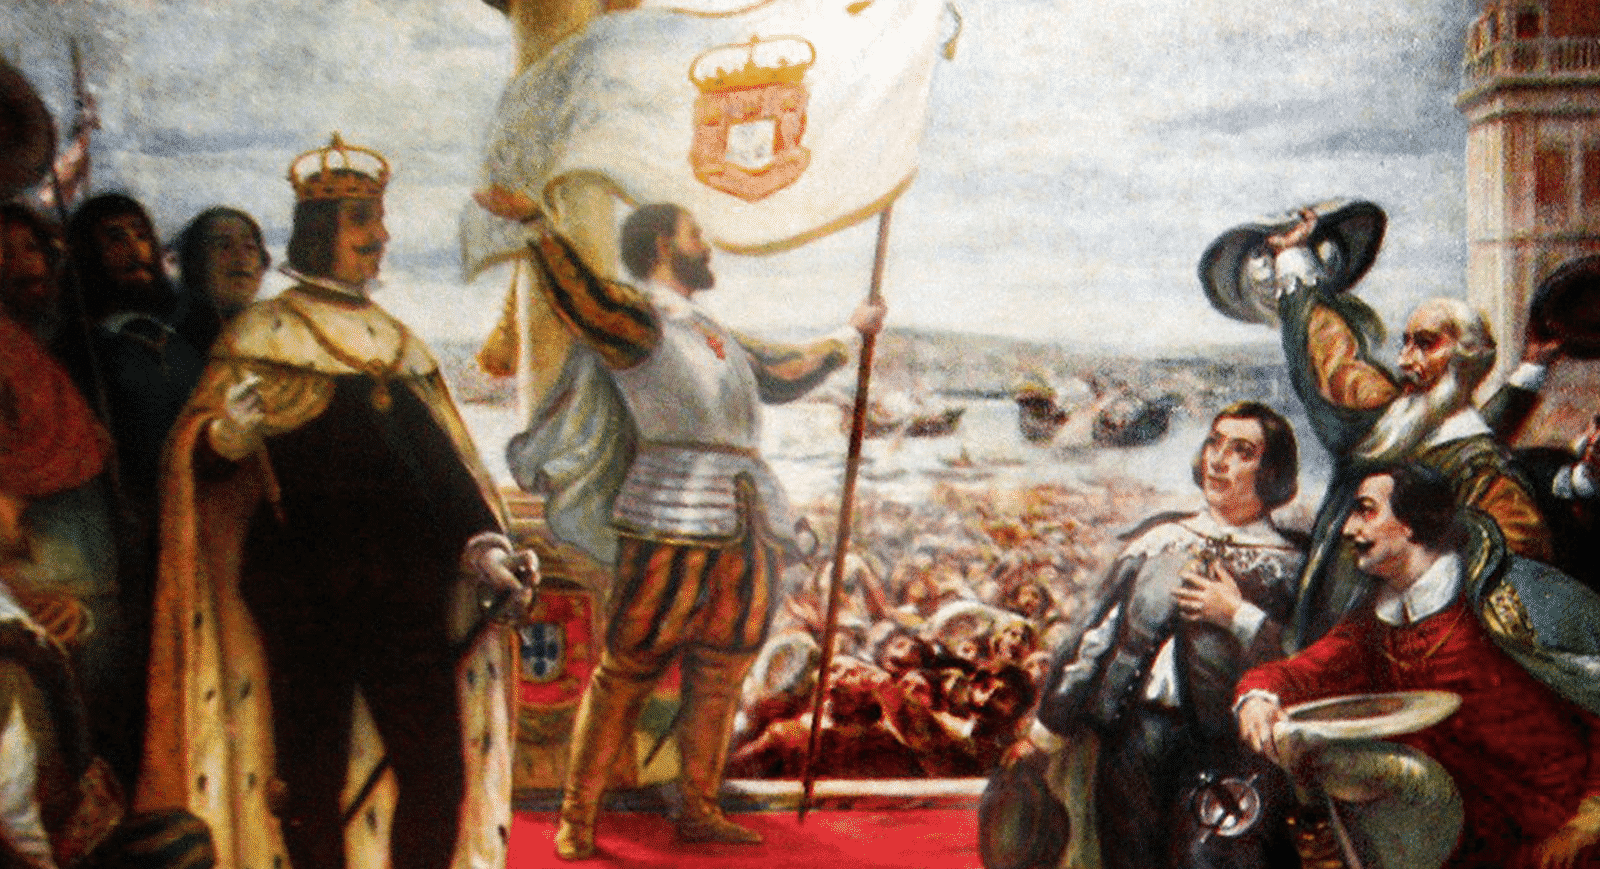 Invasões Holandesas - História, invasões no Brasil e consequências